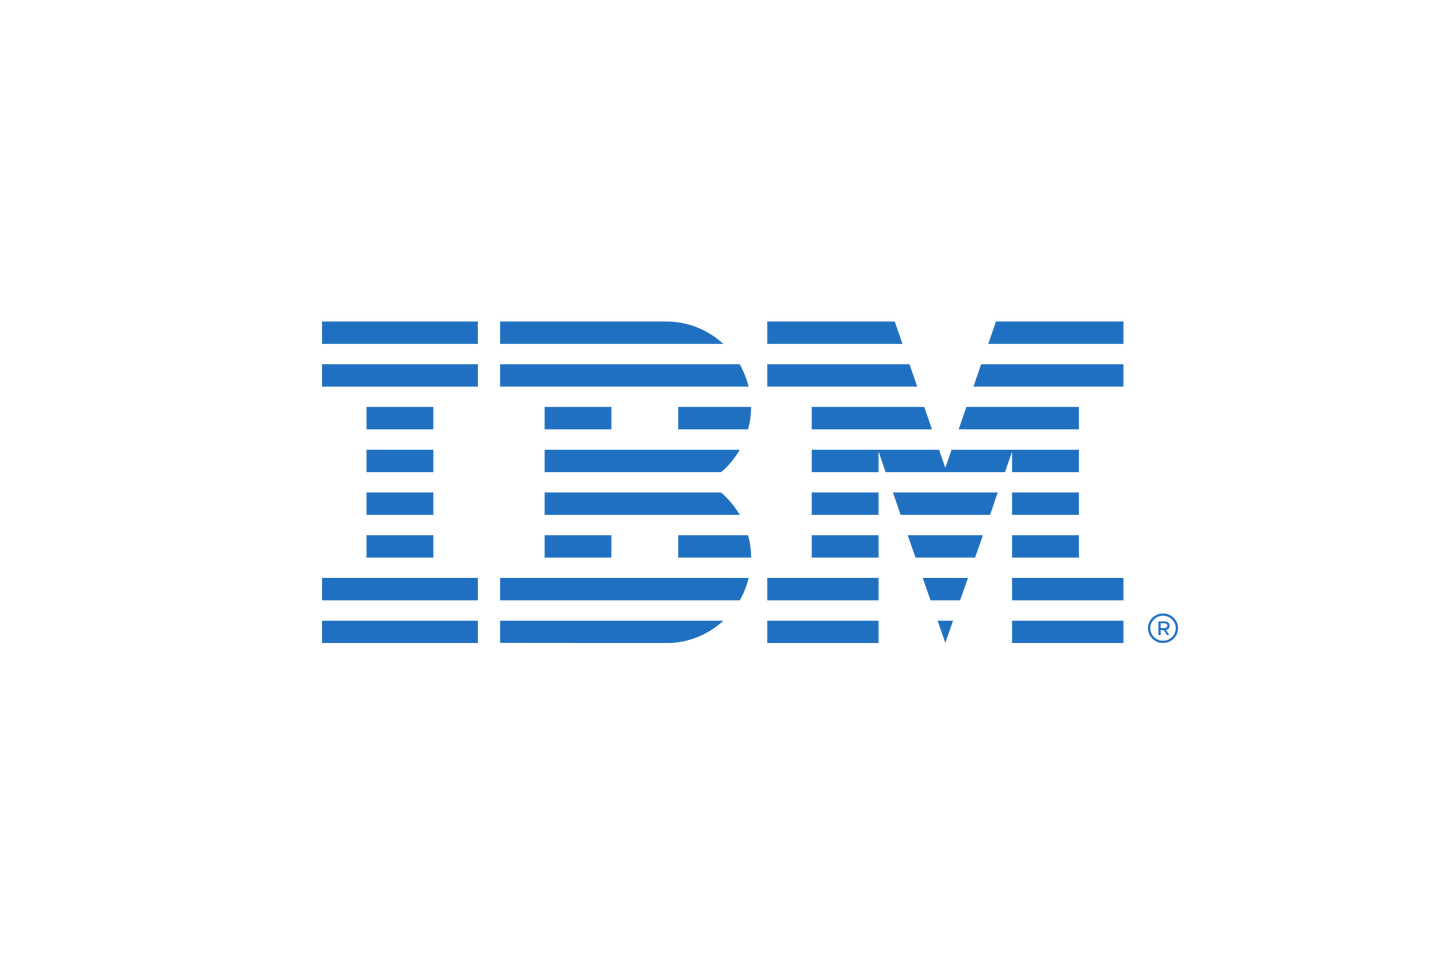 IBM Expert Labs Essential Management for IBM Cloud Pak for Data - Admin Engagement per Annum